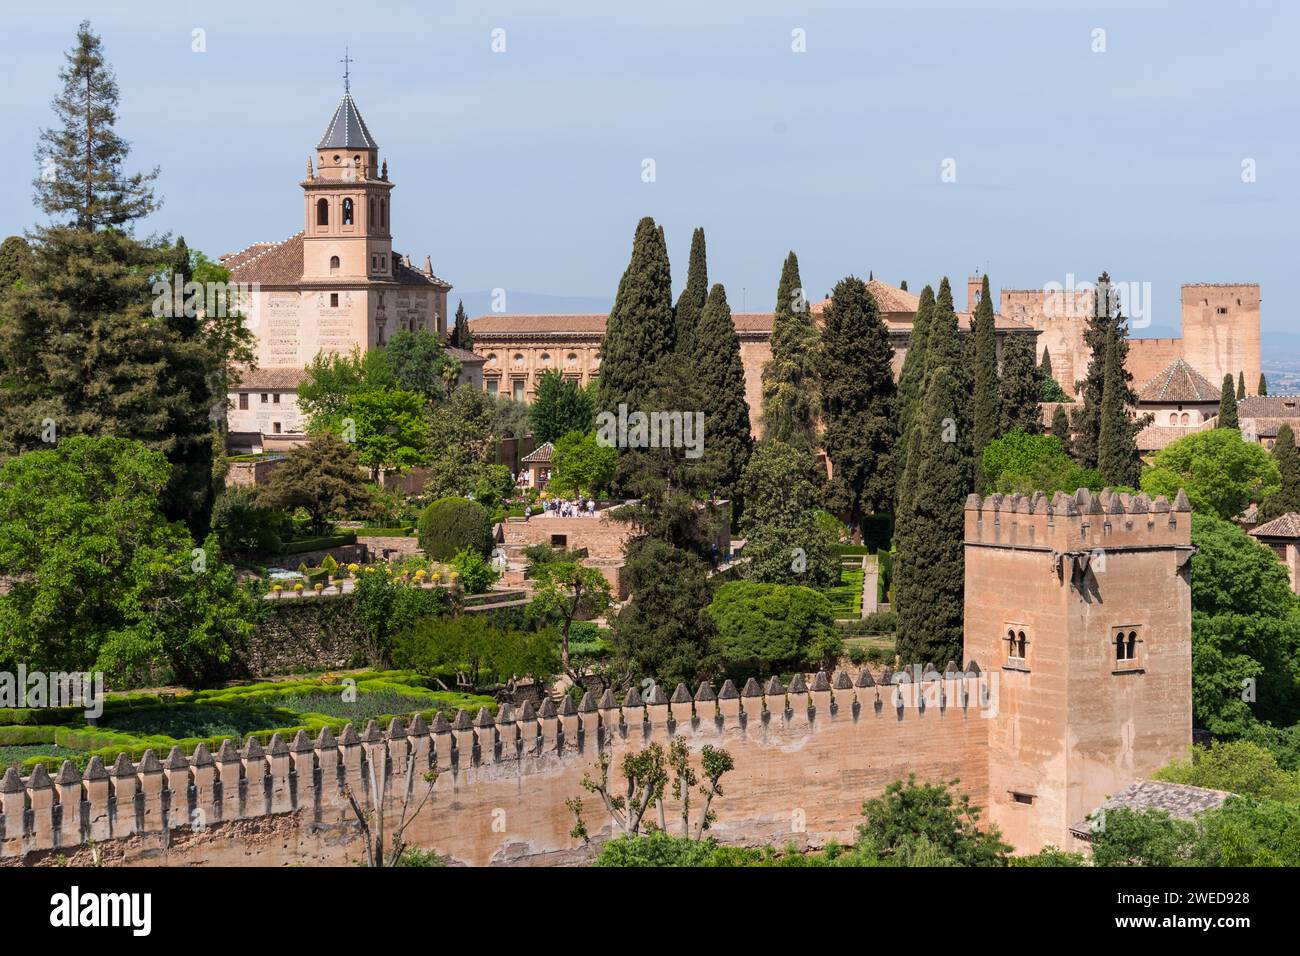 Alhambra, Espagne : un mélange époustouflant d'architecture mauresque et de patrimoine andalou, mettant en valeur la magnificence artistique de ce monument historique Banque D'Images